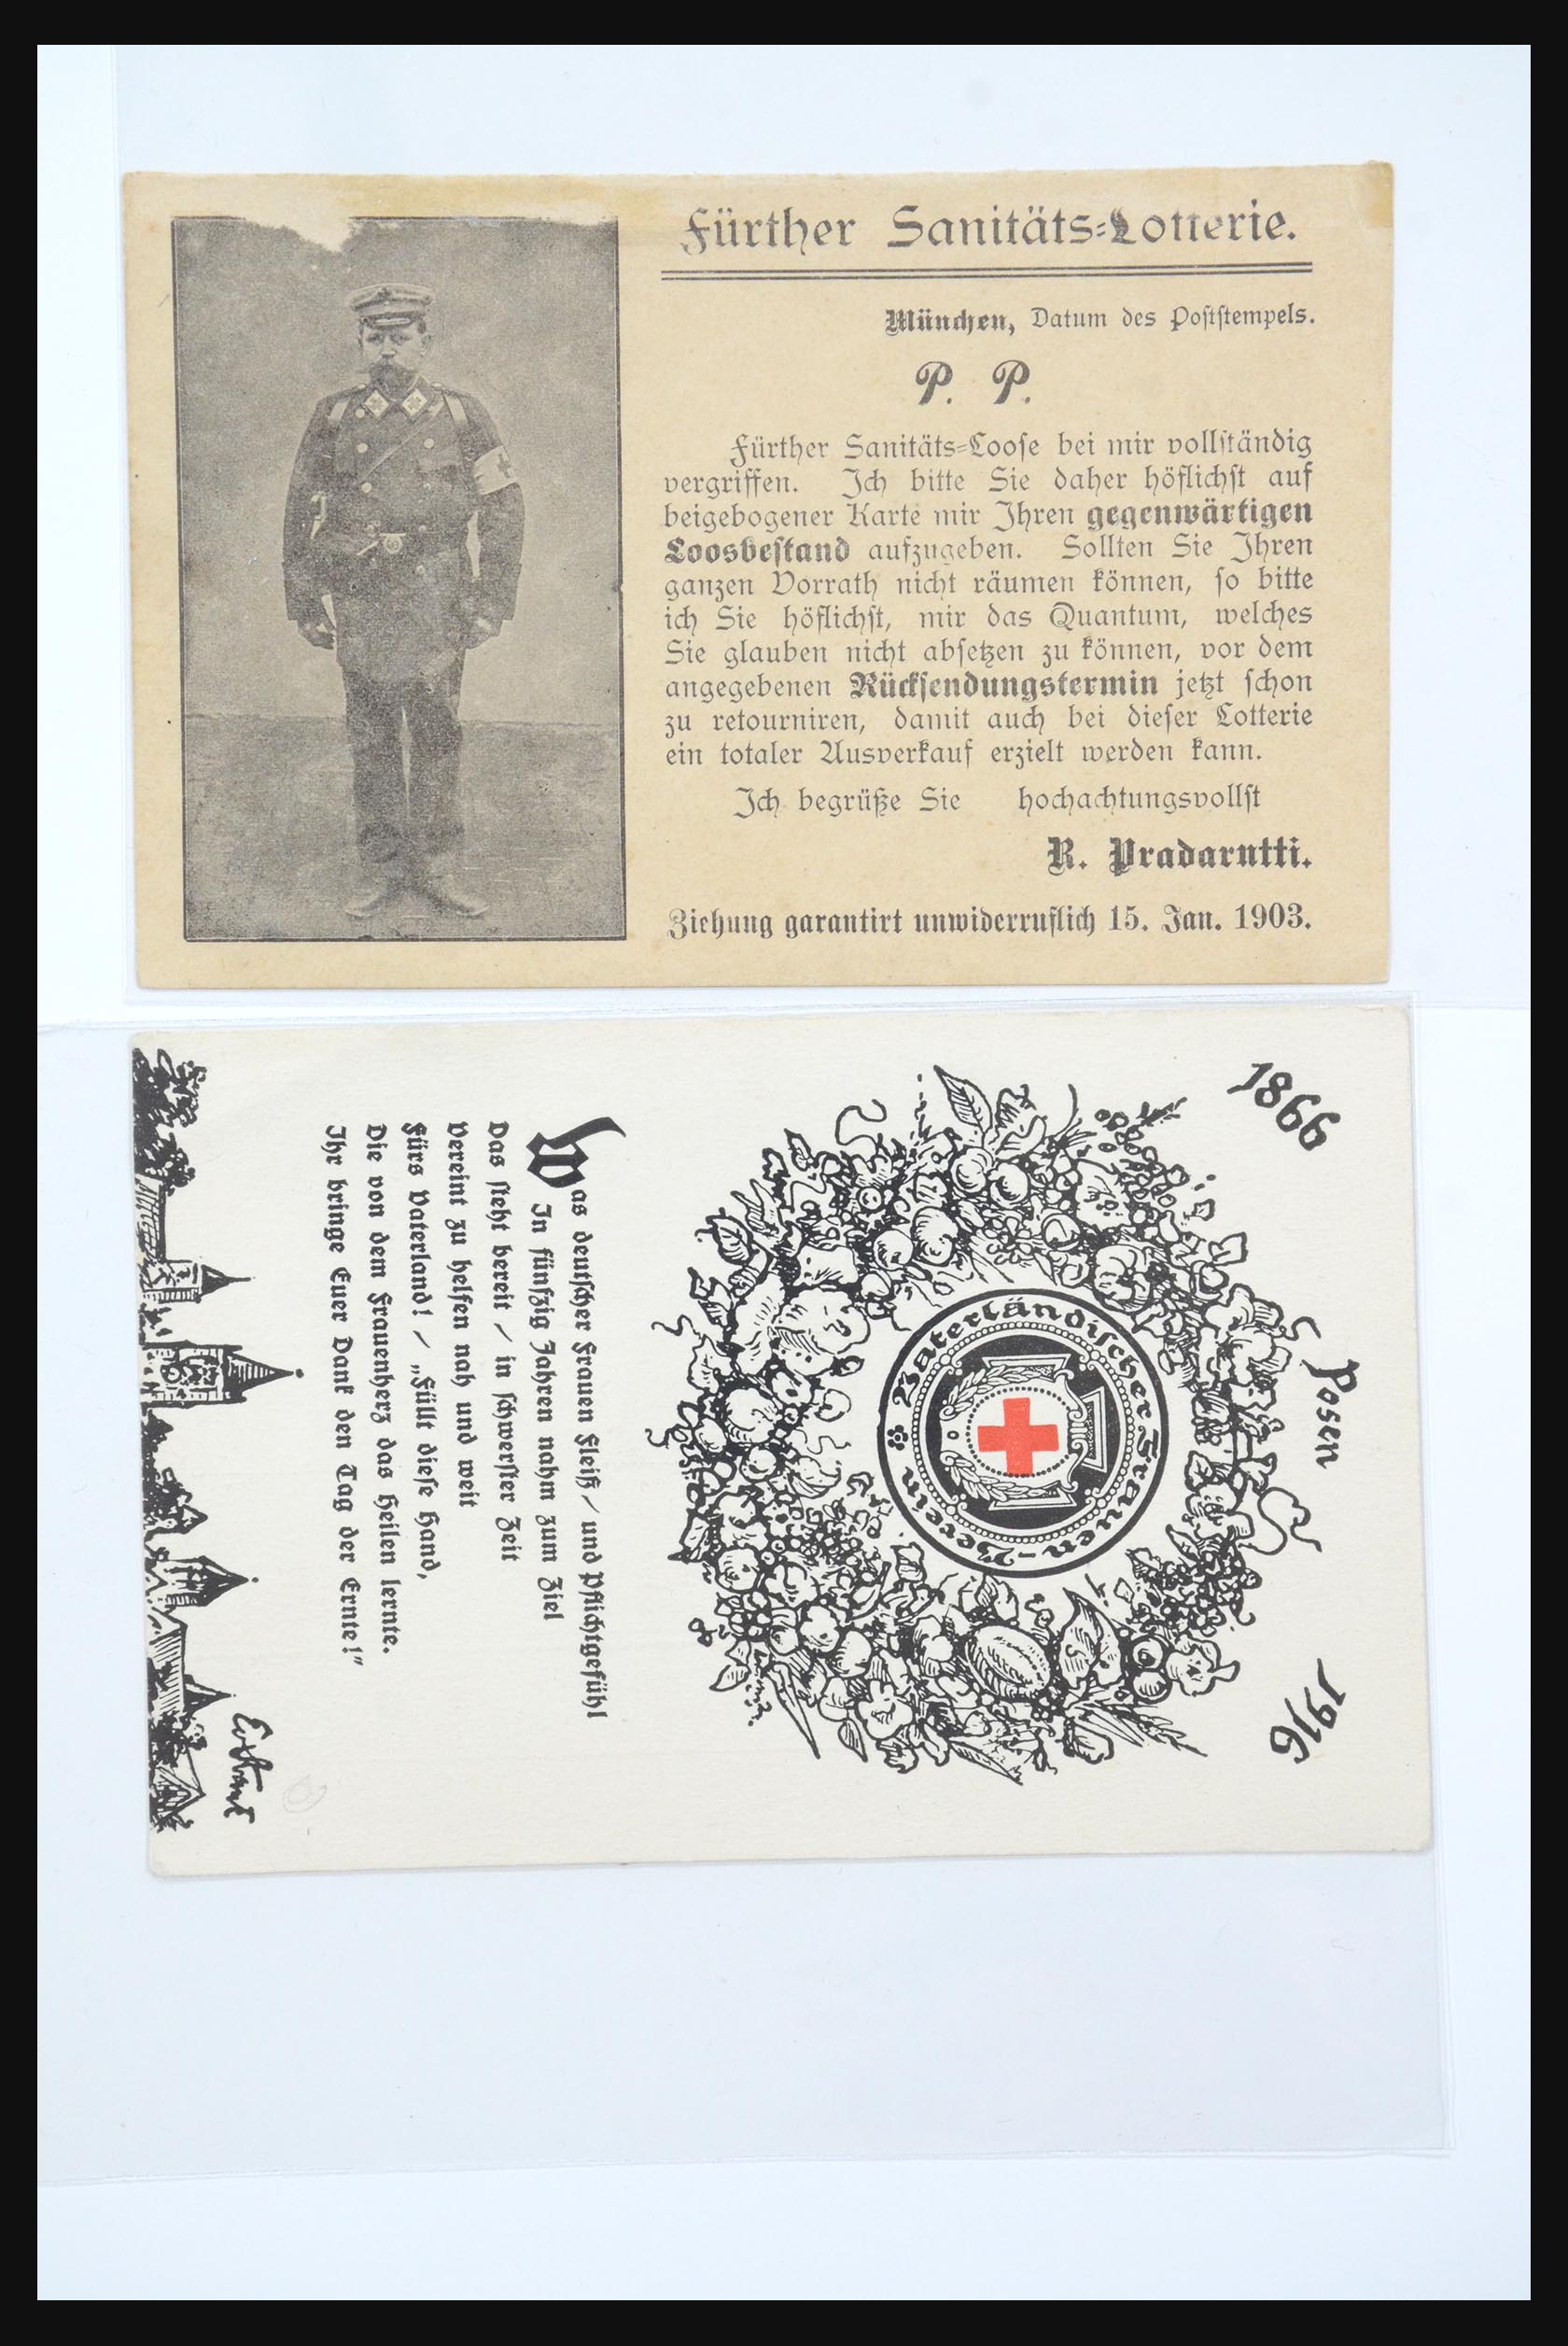 31365 0089 - 31365 Rode kruis brieven 1905-1975.